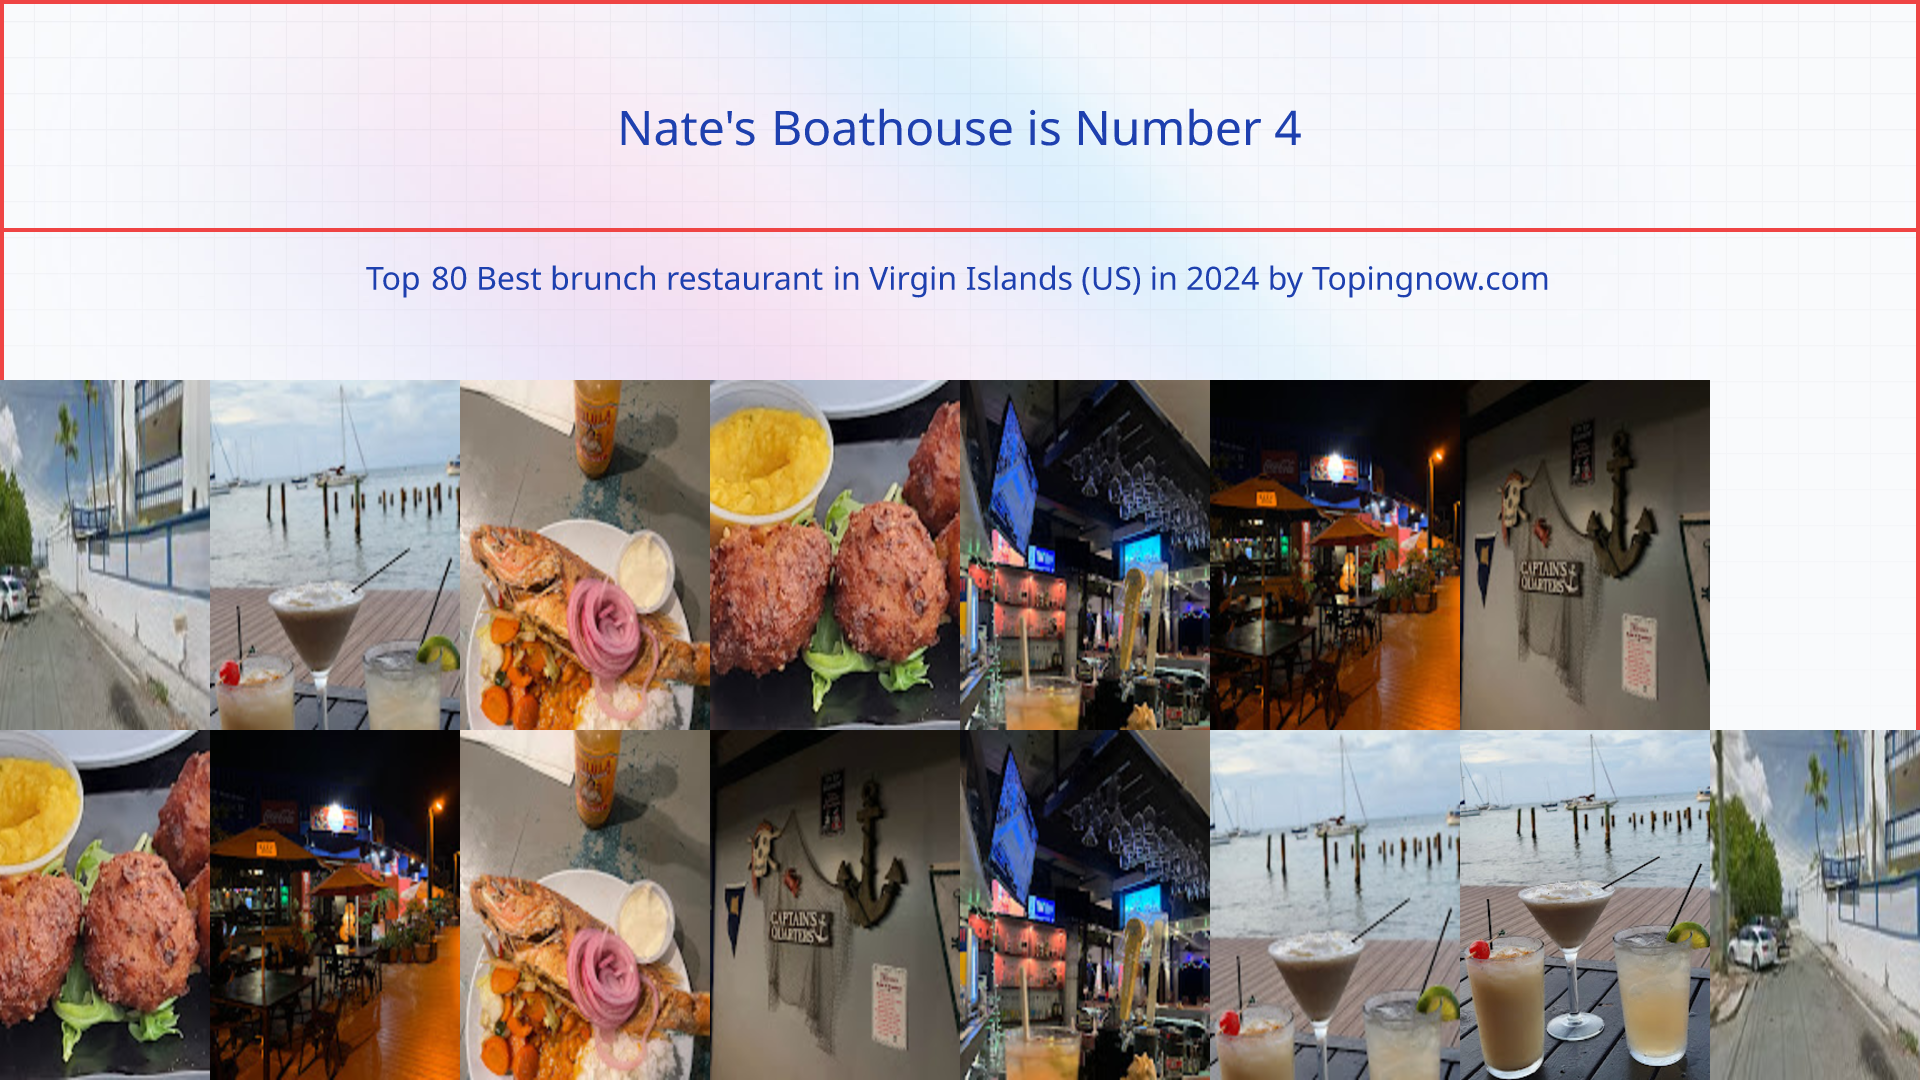 Nate's Boathouse: Top 80 Best brunch restaurant in Virgin Islands (US) in 2024